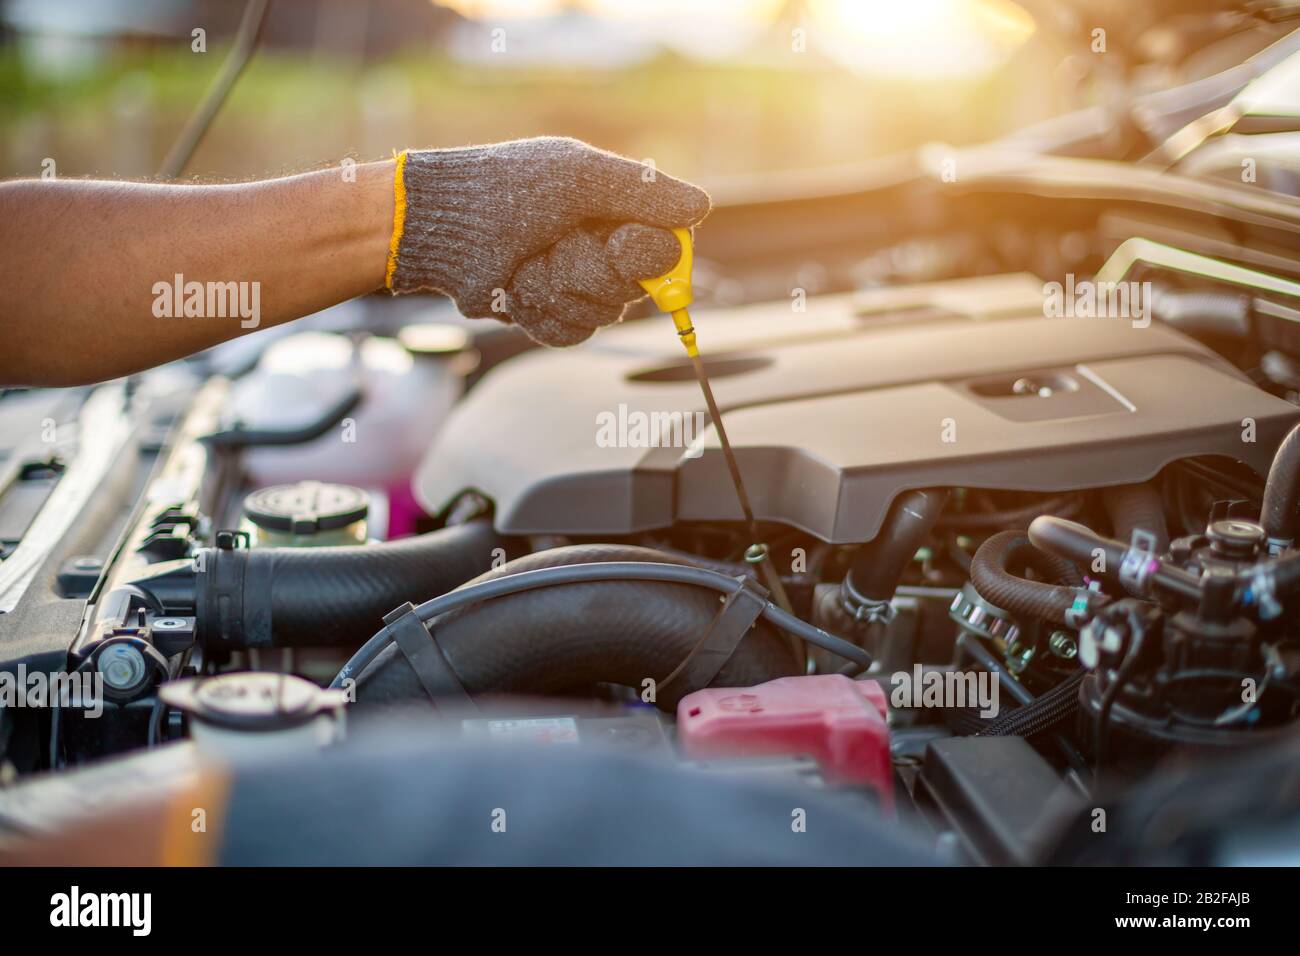 Concetto di assistenza e manutenzione dell'automobile : Manuale di tecnico che controlla o ripara il motore dell'automobile moderna Foto Stock